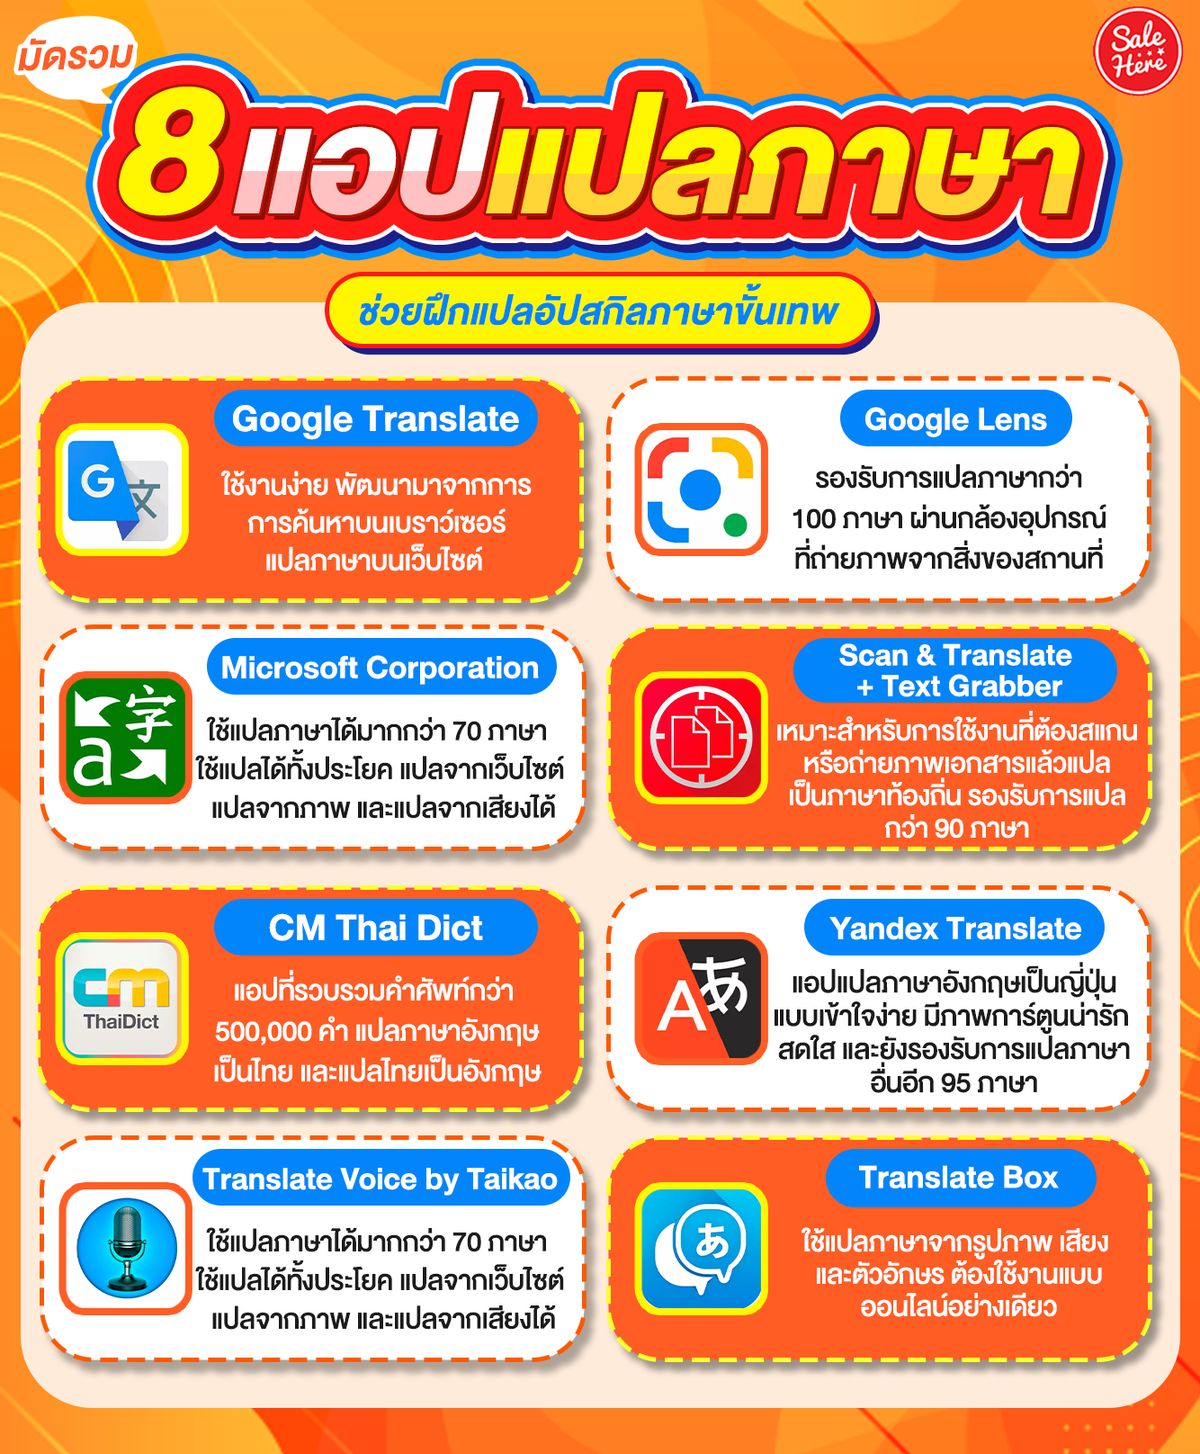 เครื่องแปลภาษาอังกฤษเป็นไทย: สื่อสารไปกับโลกด้วยความเข้าใจทั้งสองภาษา -  Hanoilaw Firm